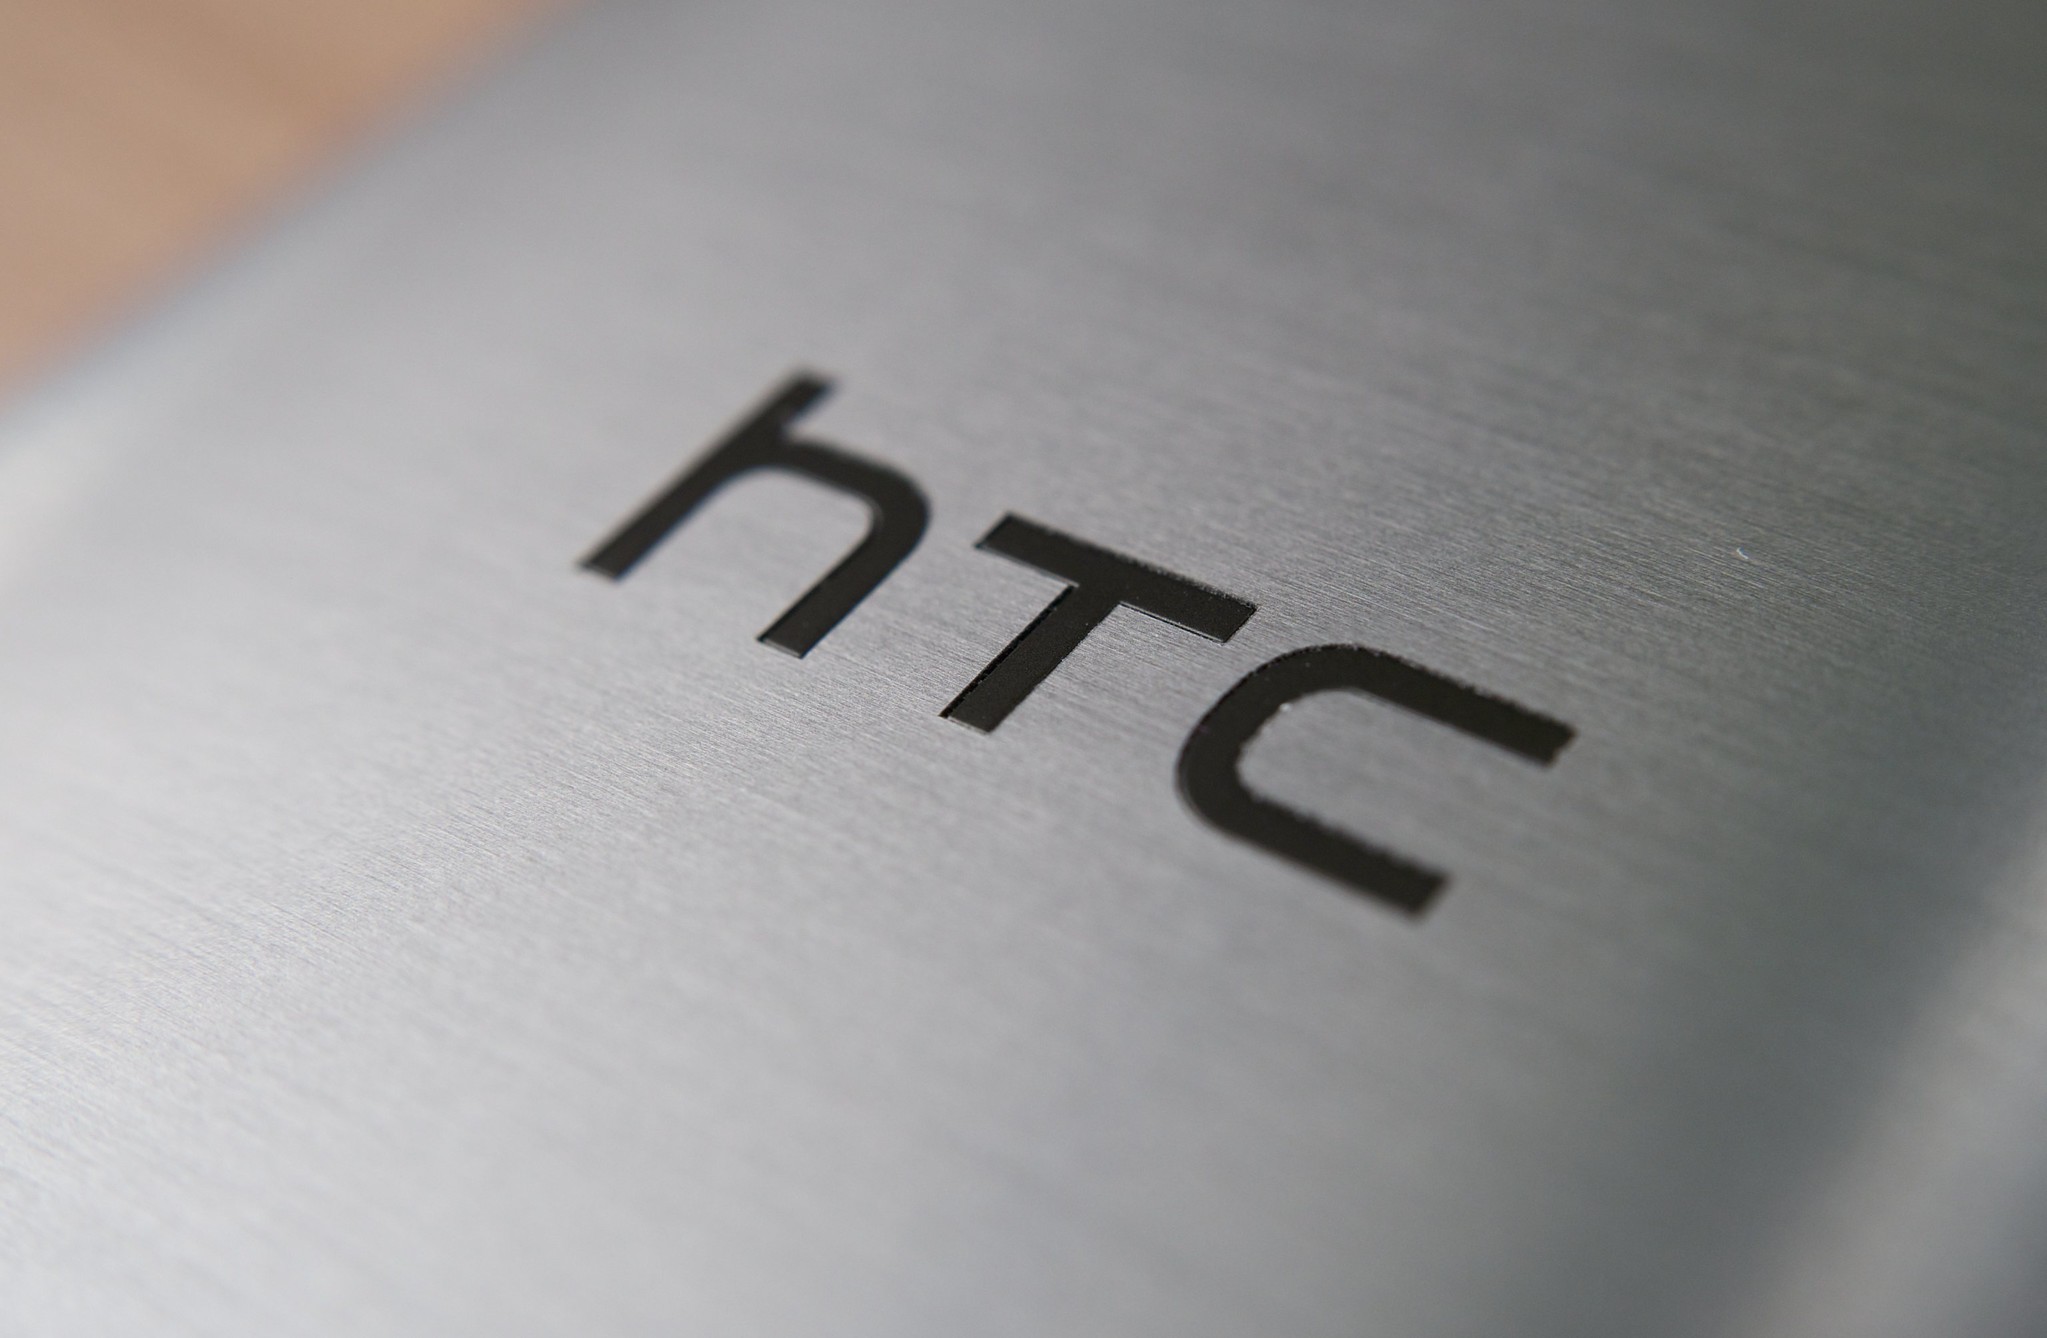 Gjennomgang av HTC Wildfire R70 smarttelefon med hovedegenskaper